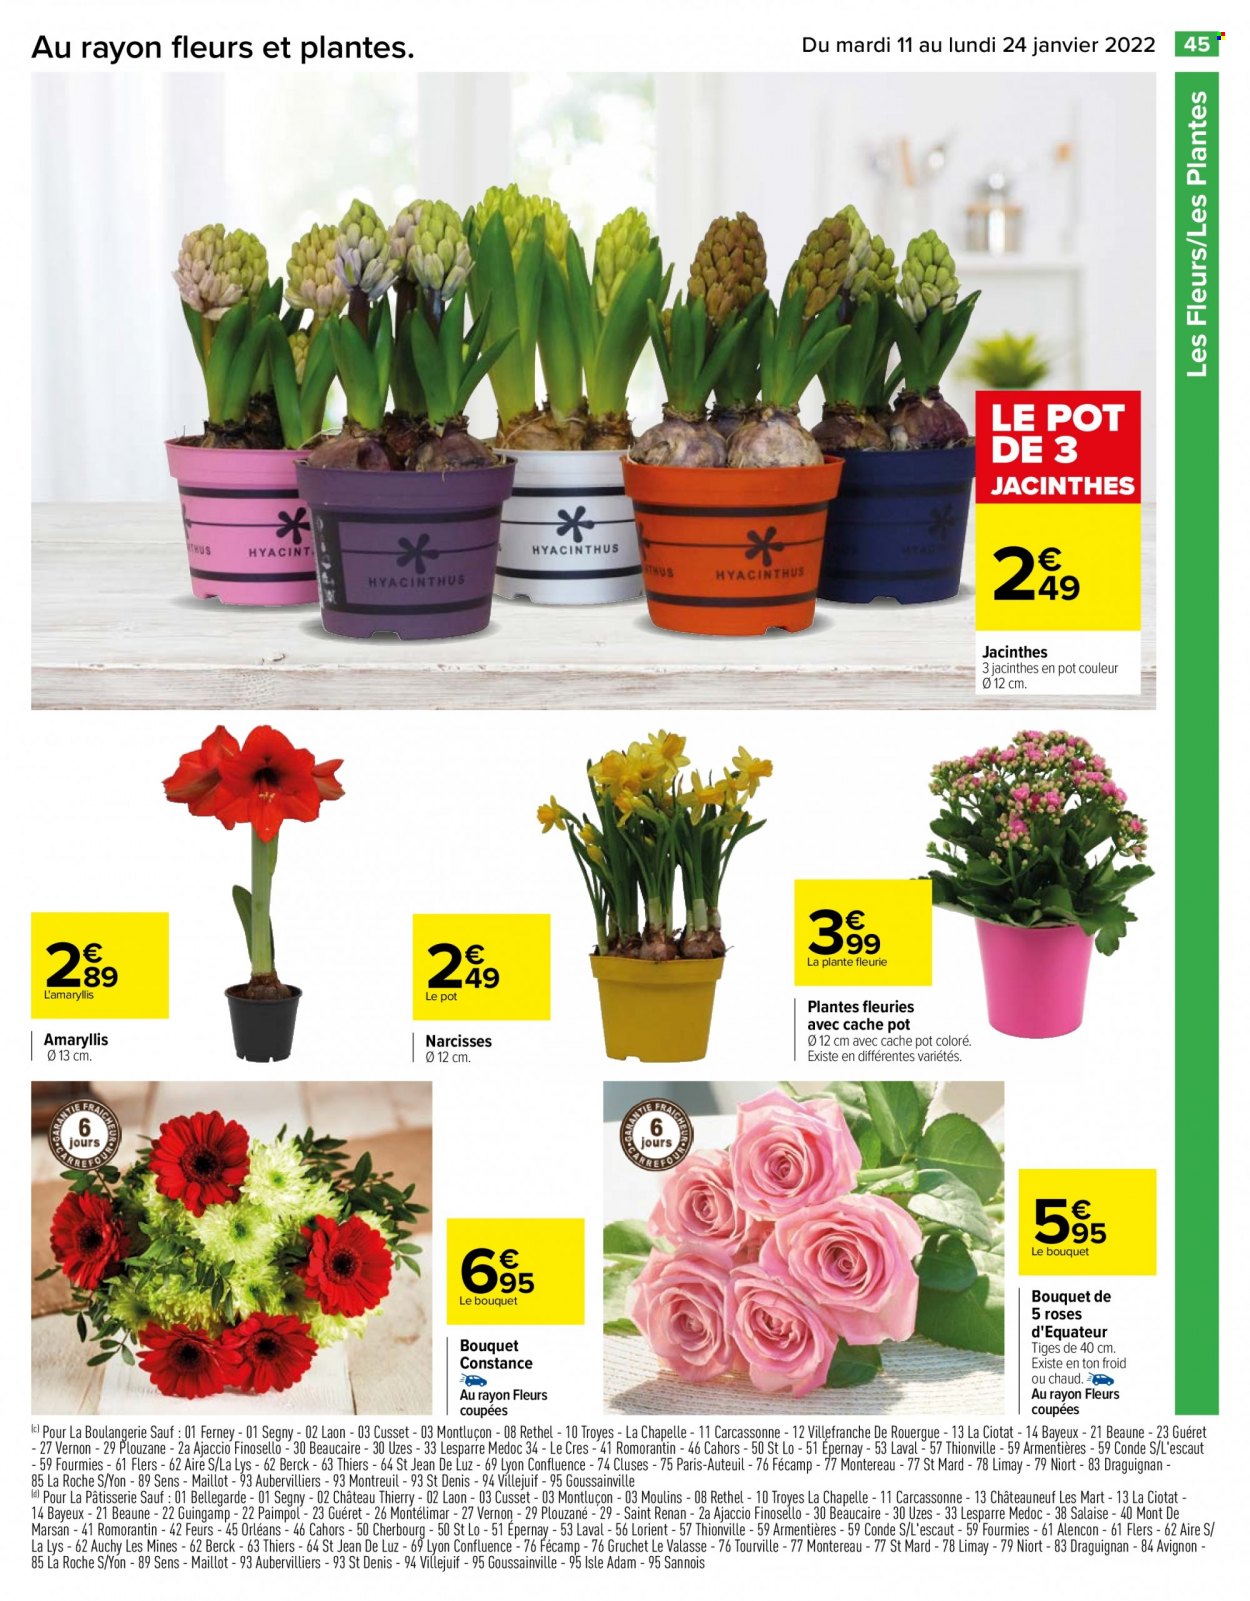 thumbnail - Catalogue Carrefour Hypermarchés - 11/01/2022 - 24/01/2022 - Produits soldés - fleur, jacinthe, amaryllis, plante fleurie. Page 45.